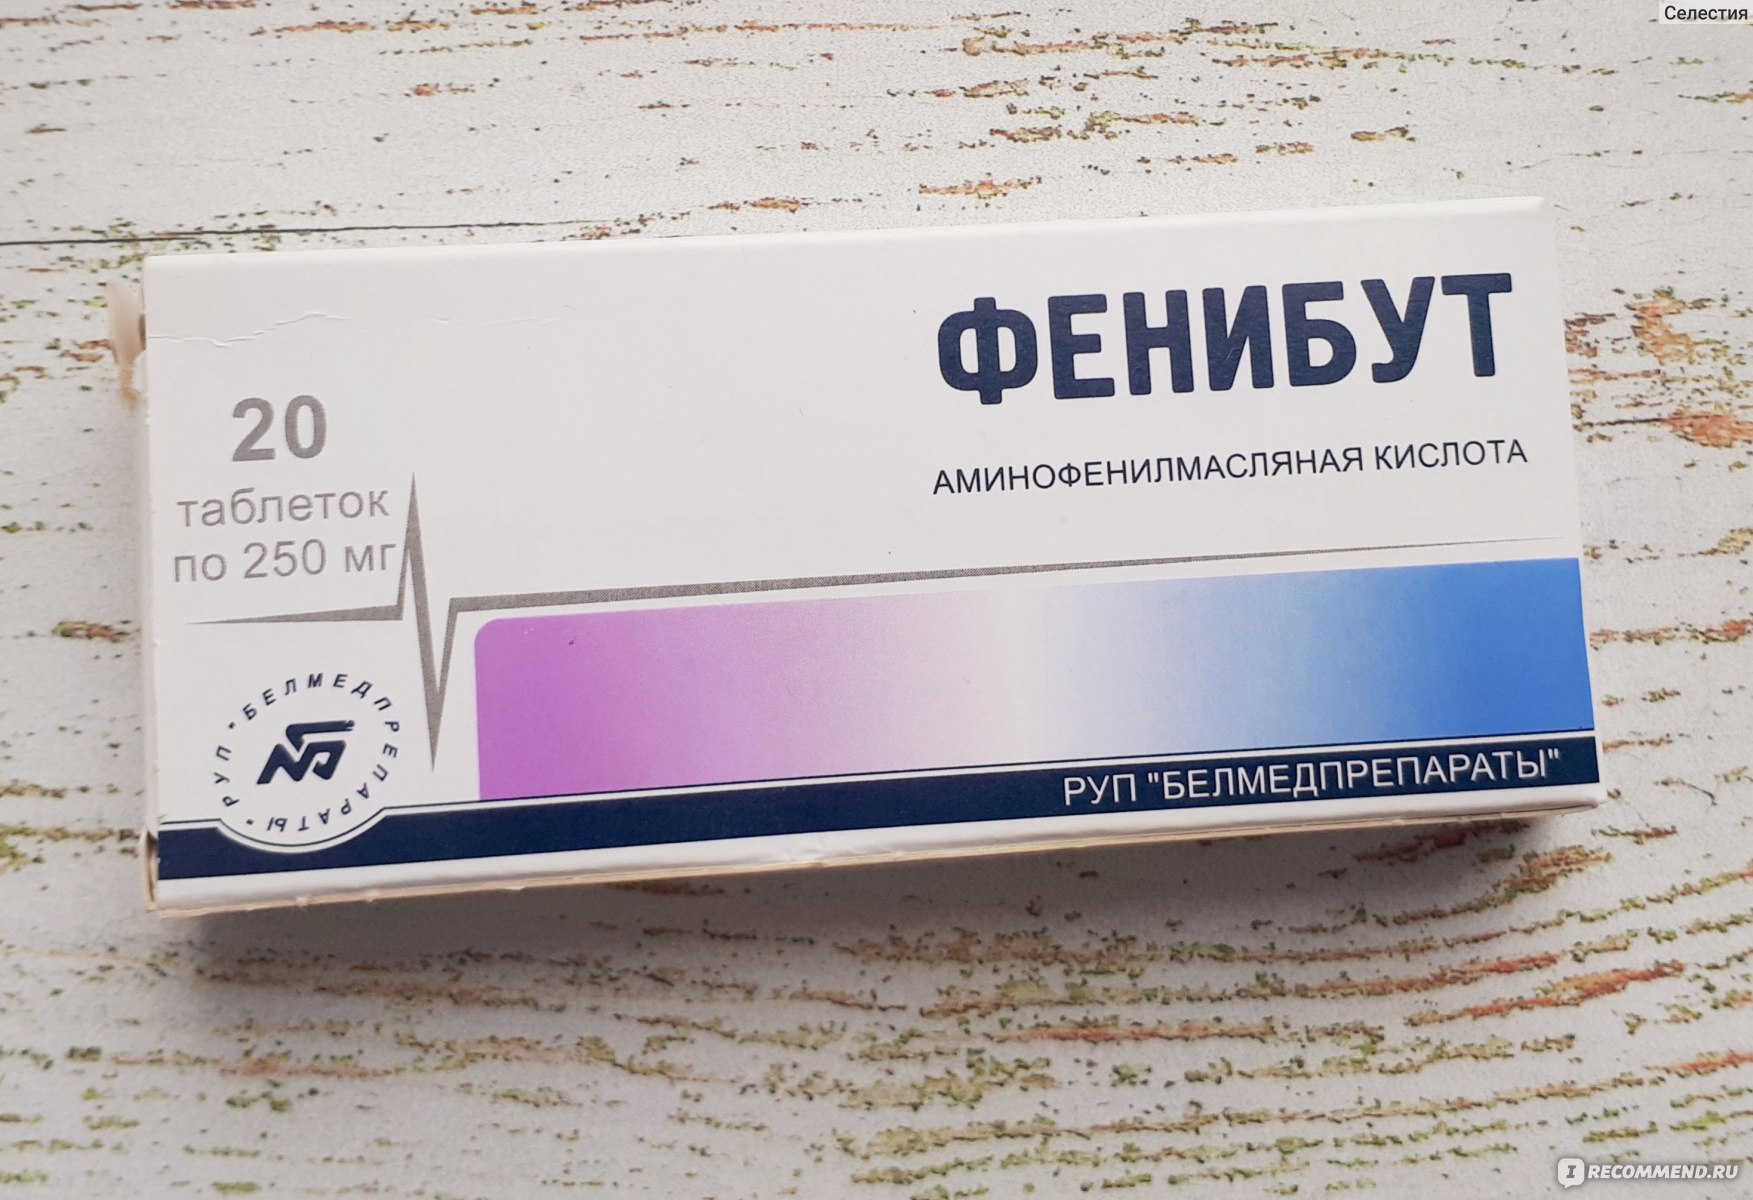 Успокоительные таблетки фенибут. Фенибут табл 250 мг 20 Белмедпрепараты. Фенибут РУП Белмедпрепараты. Фенибут таб 250мг 20 Белмедпрепараты. Фенибут 250 мг Белоруссия.